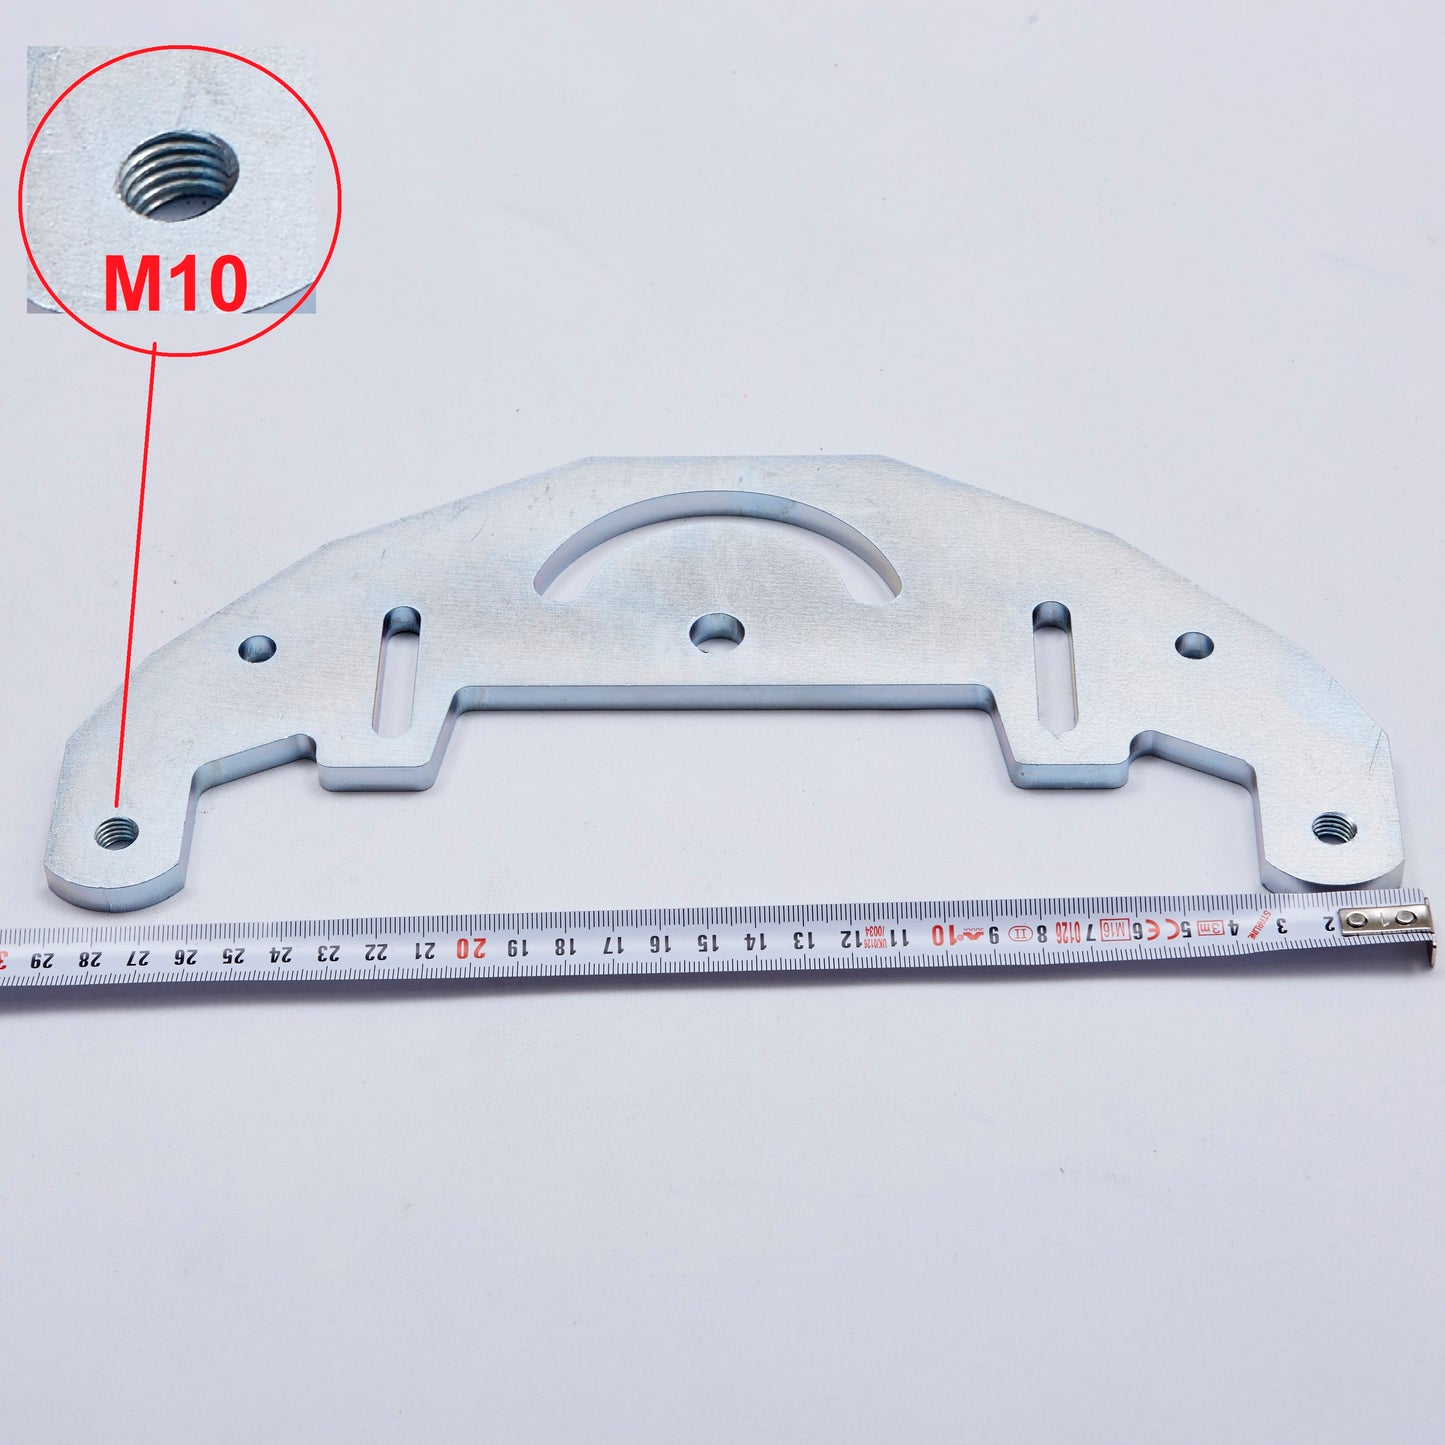 TR Maker Belt Grinder plate for 2x72" making grinder / belt grinder